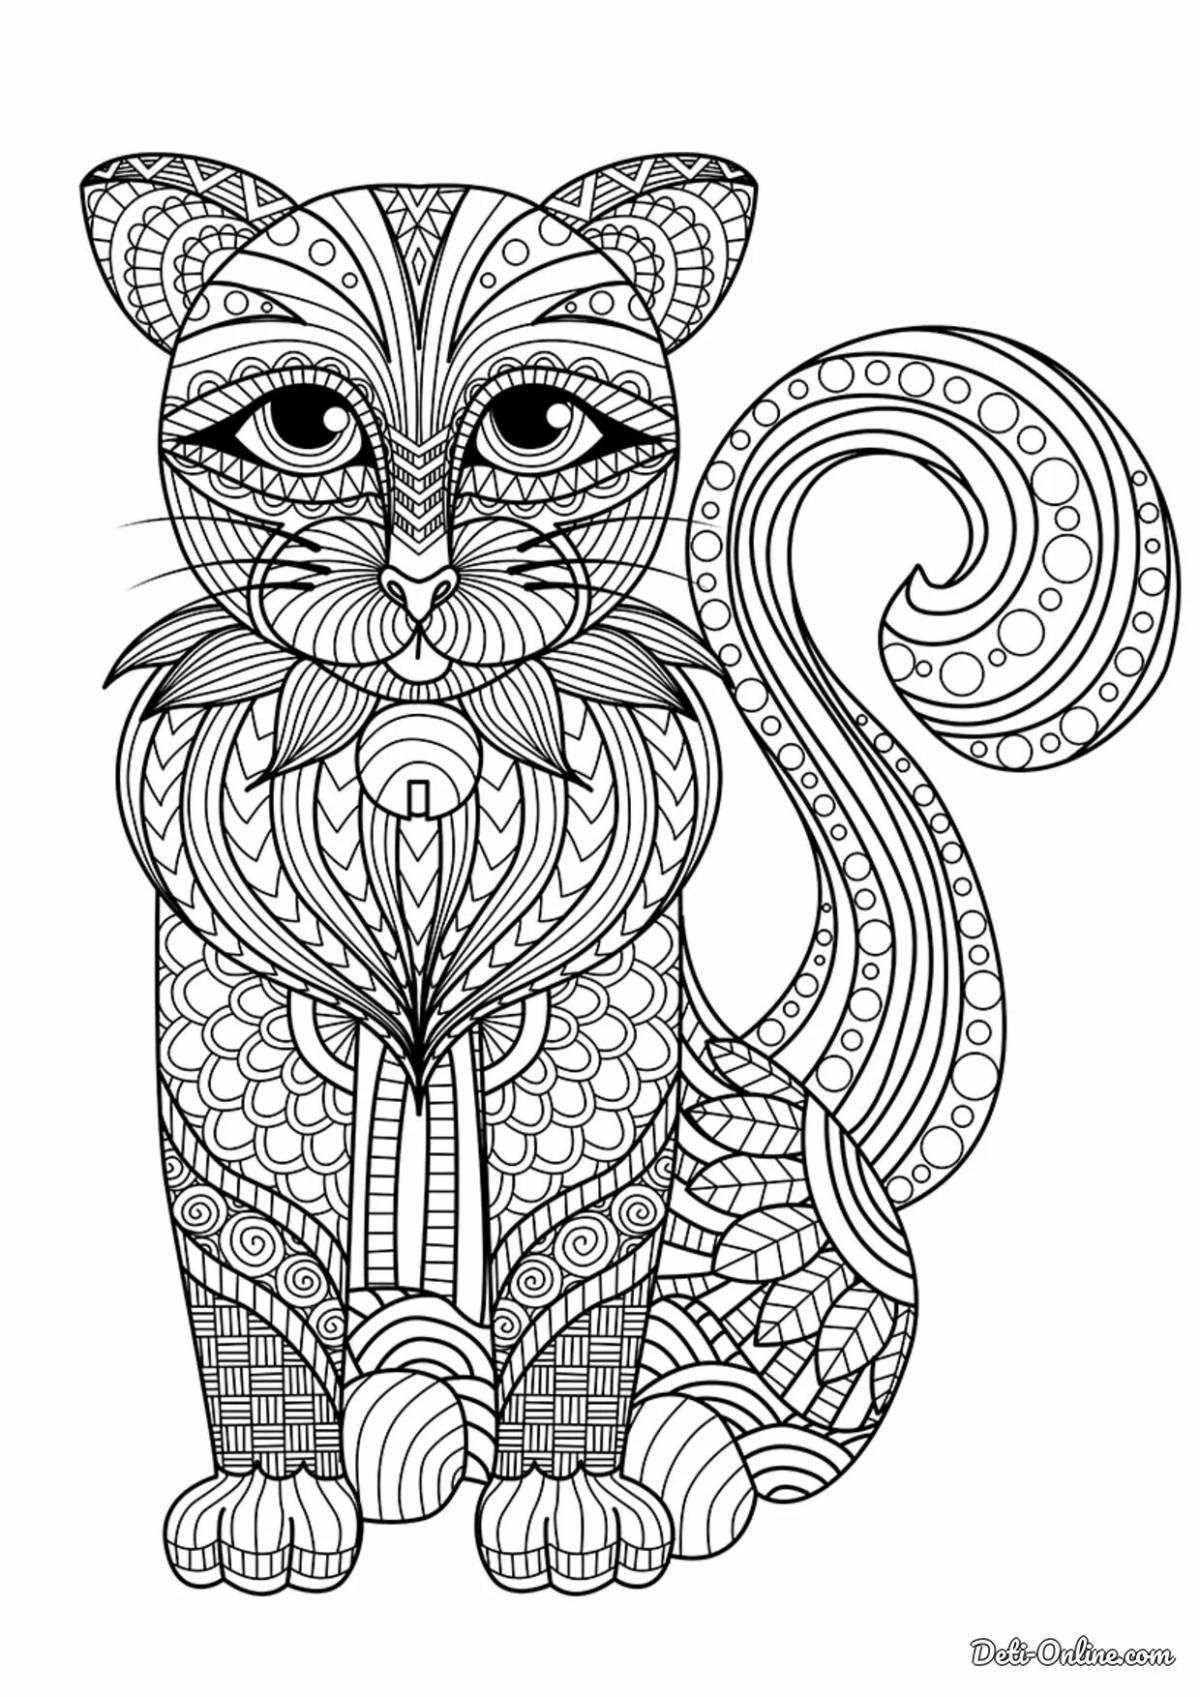 Dreamy cat mandala coloring book